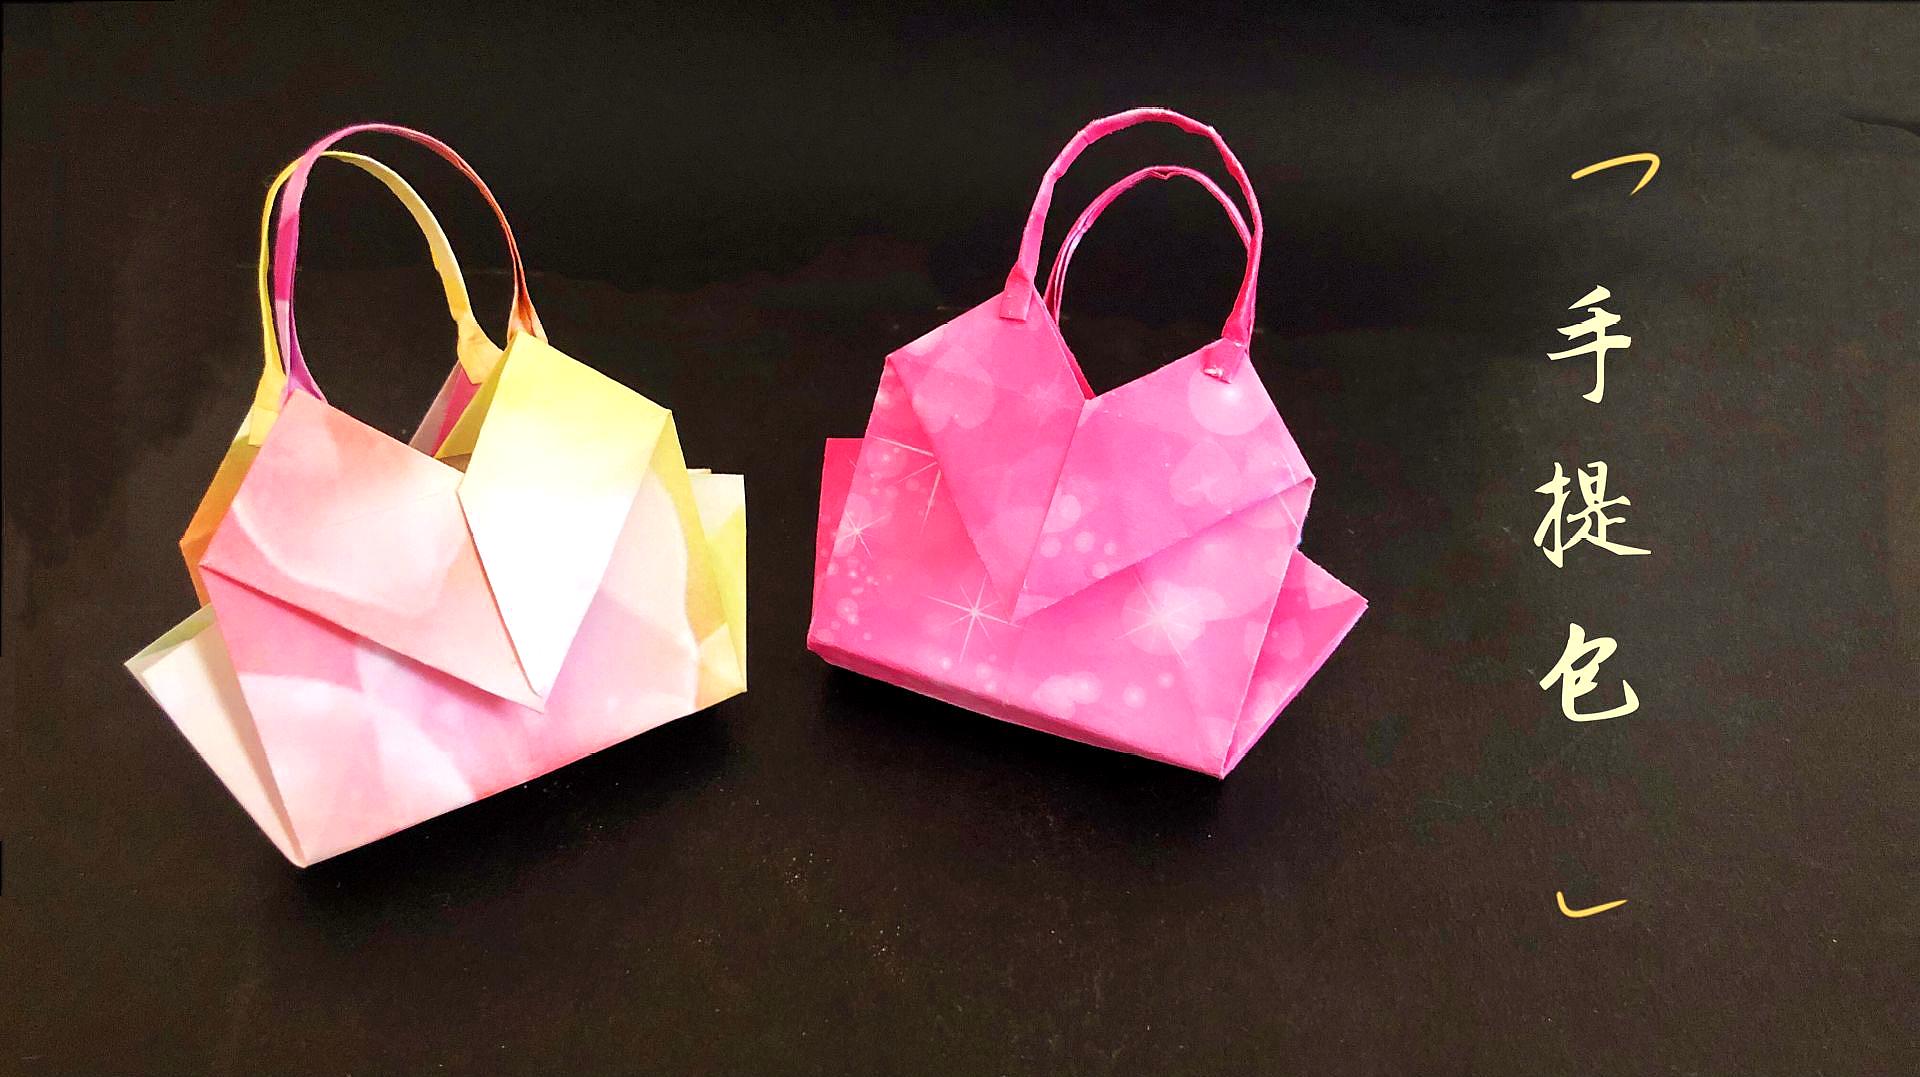 折纸教程:超美的手提包,分分钟就折好了,女孩子最喜欢啦!